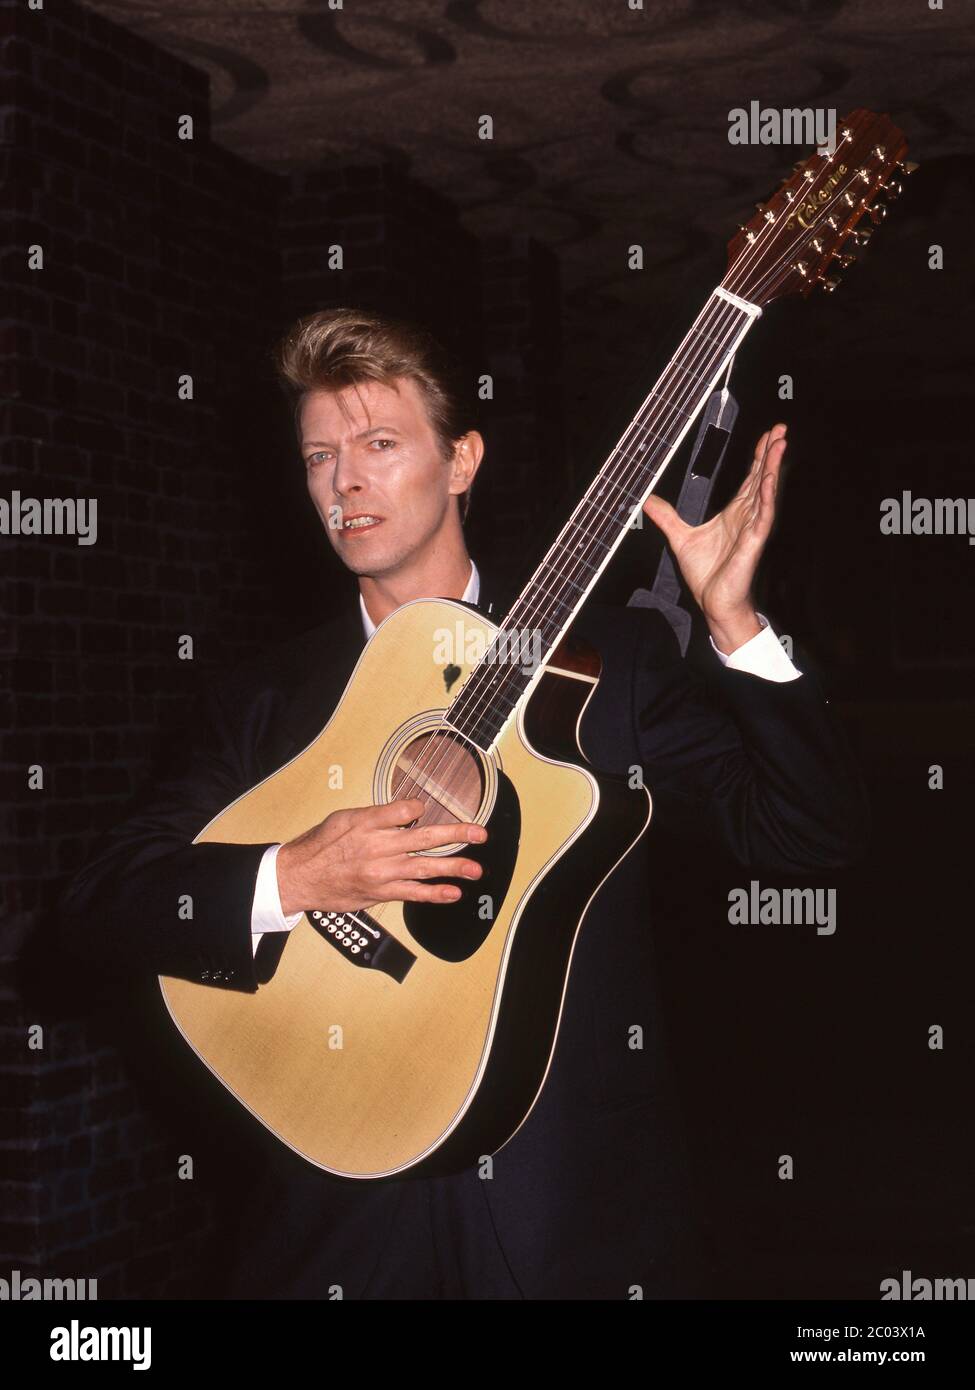 David Bowie al lancio del tour dei migliori successi Sound + Vision al Rainbow Theatre di Londra, gennaio 1990 Foto Stock